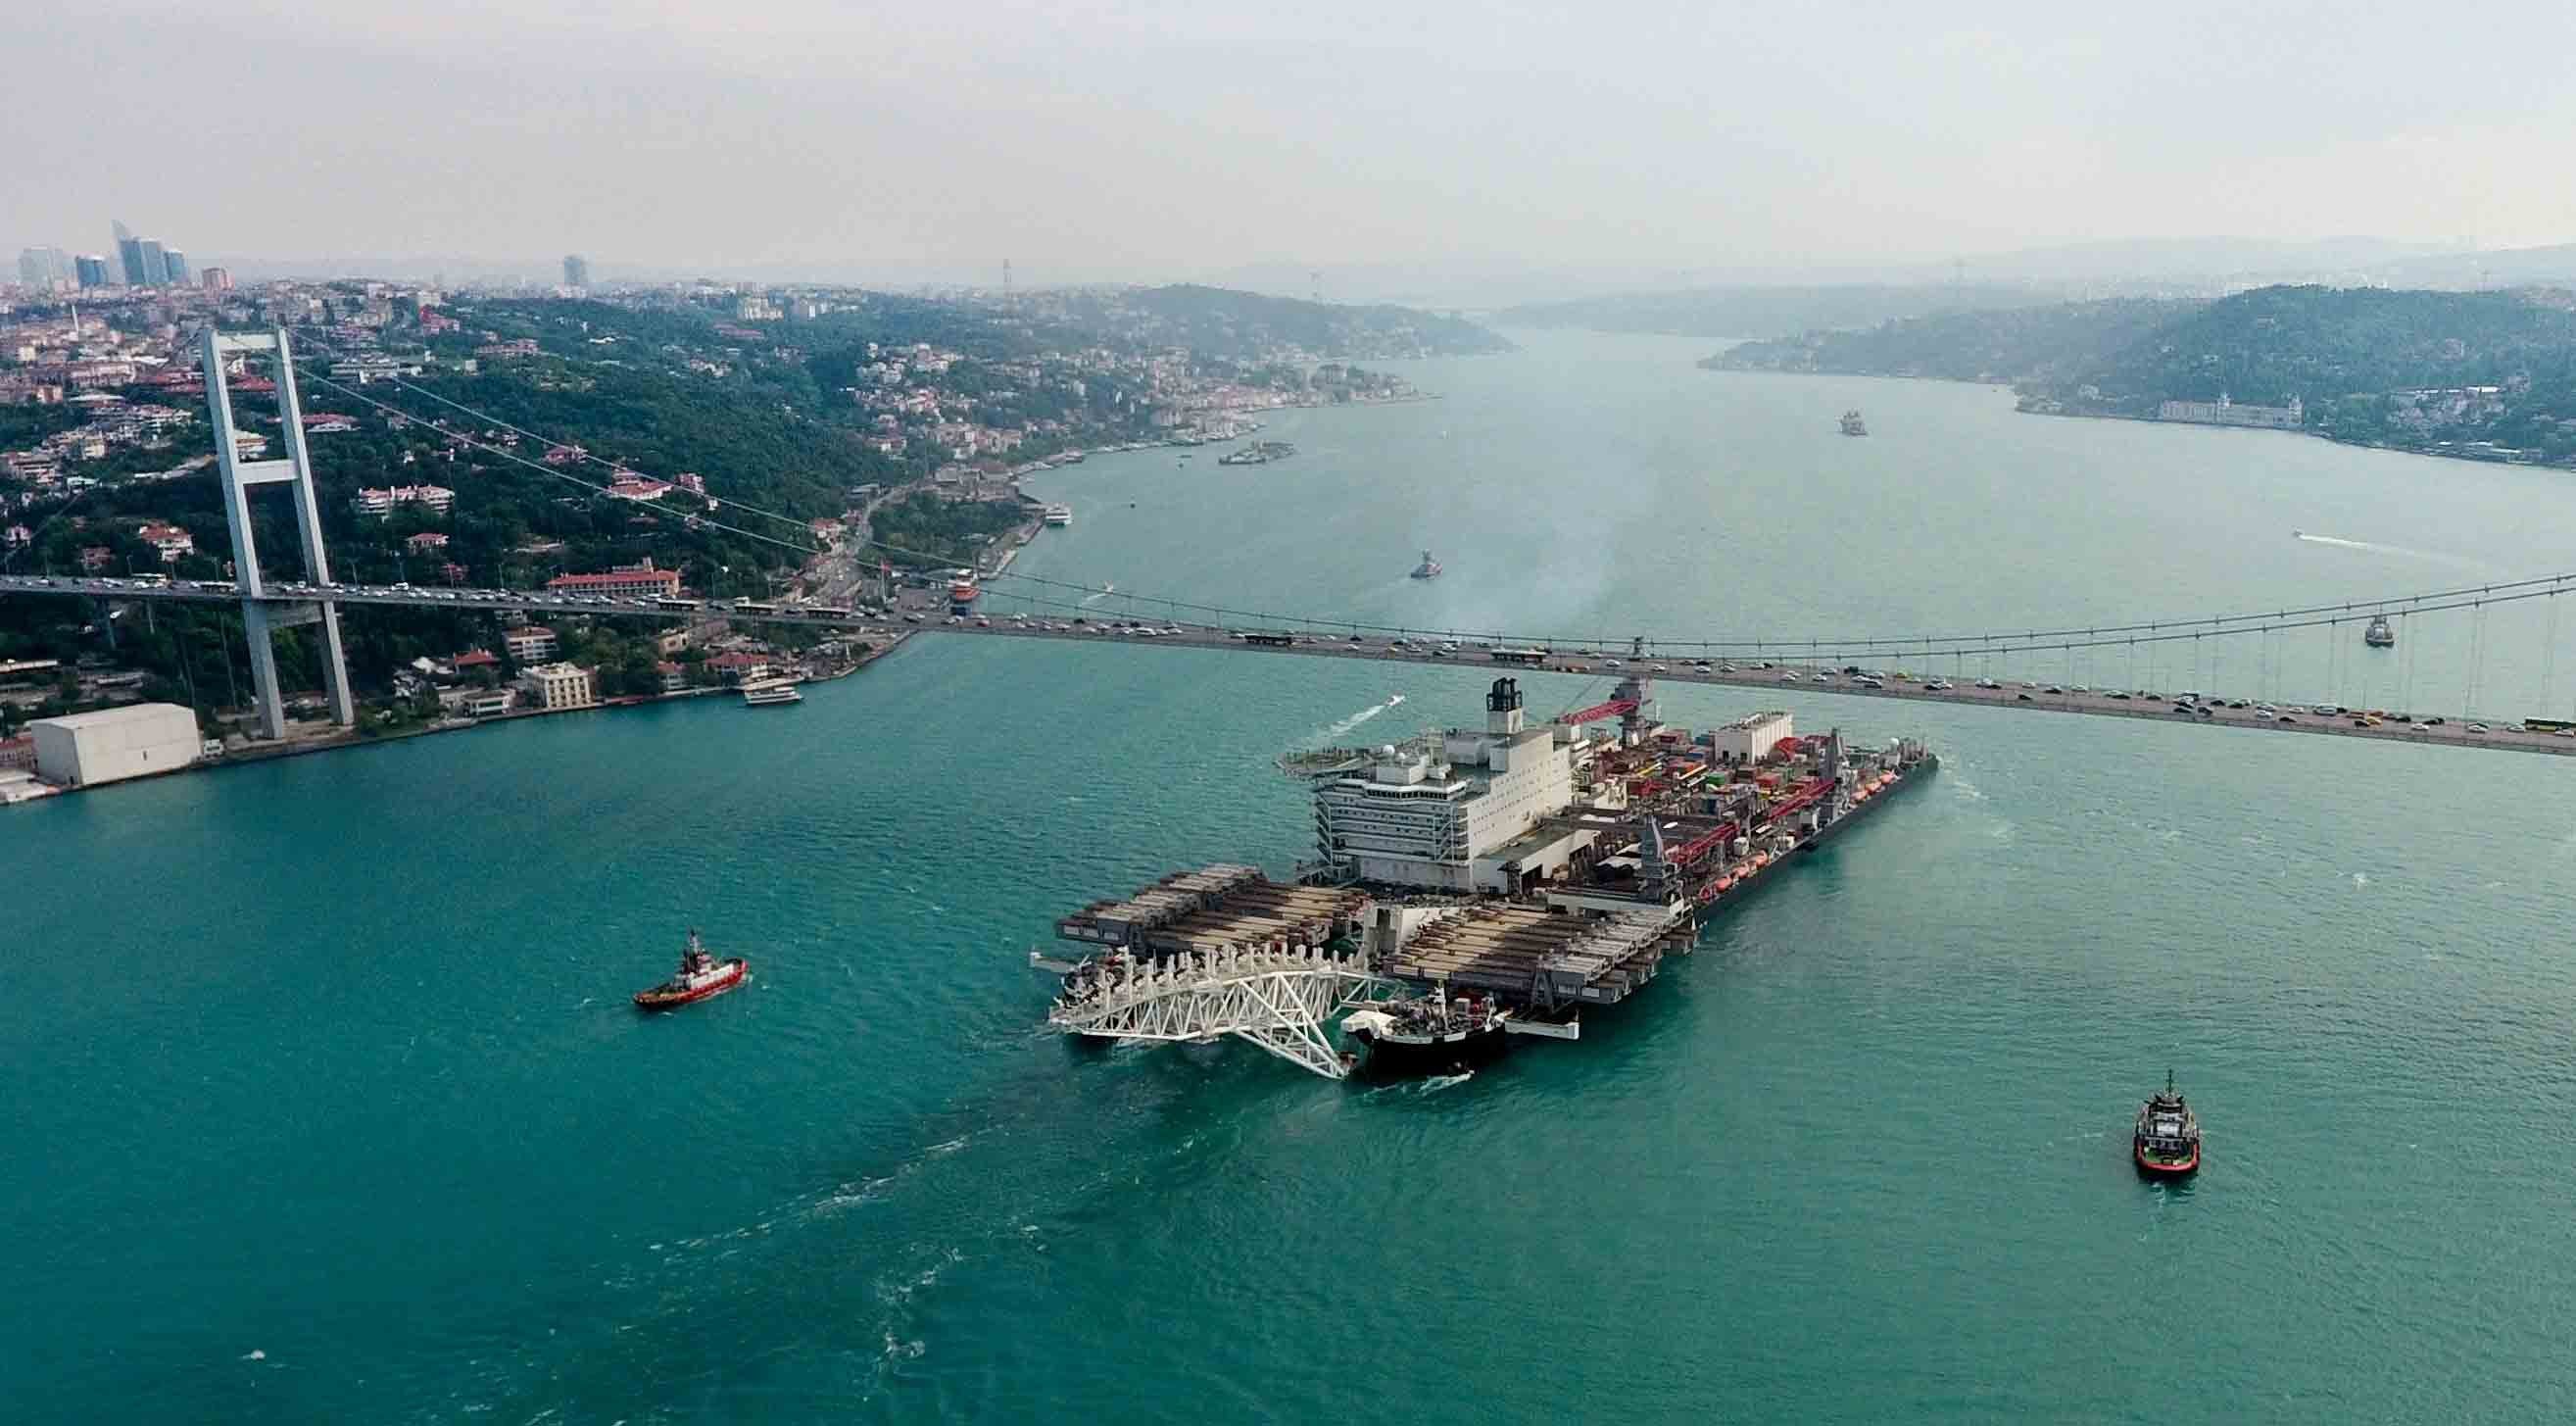 Pioneering Spirit TürkAkım Deniz Boru Hattının yapımında çalışmaküzere 31 Mayıs 2017 tarihinde İstanbul Boğazı'ndan geçti